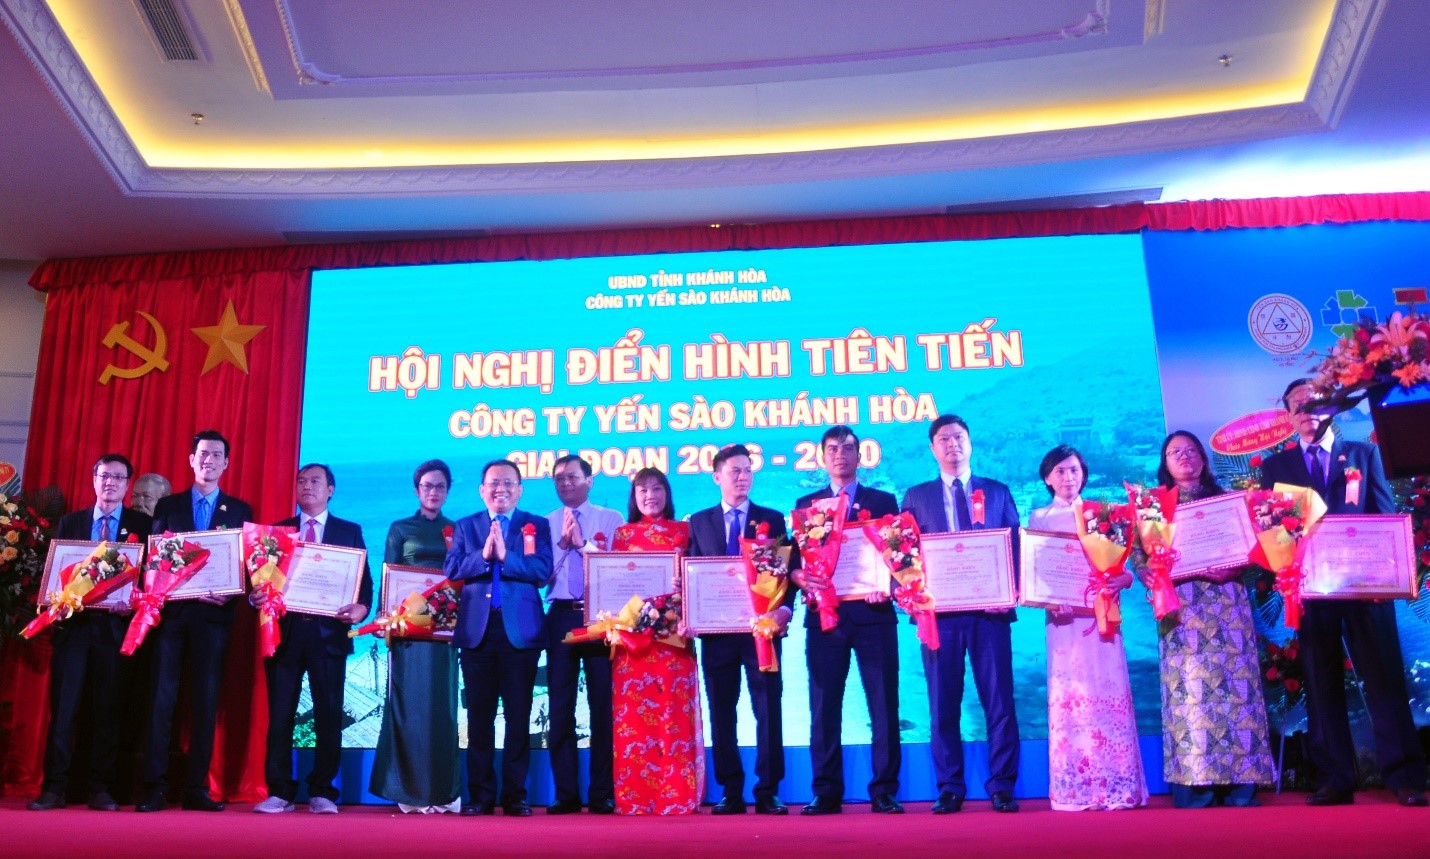 Ông Lê Hữu Hoàng, Phó Chủ tịch UBND tỉnh Khánh Hòa tặng Bằng khen của UBND tỉnh Khánh Hòa cho các cá nhân